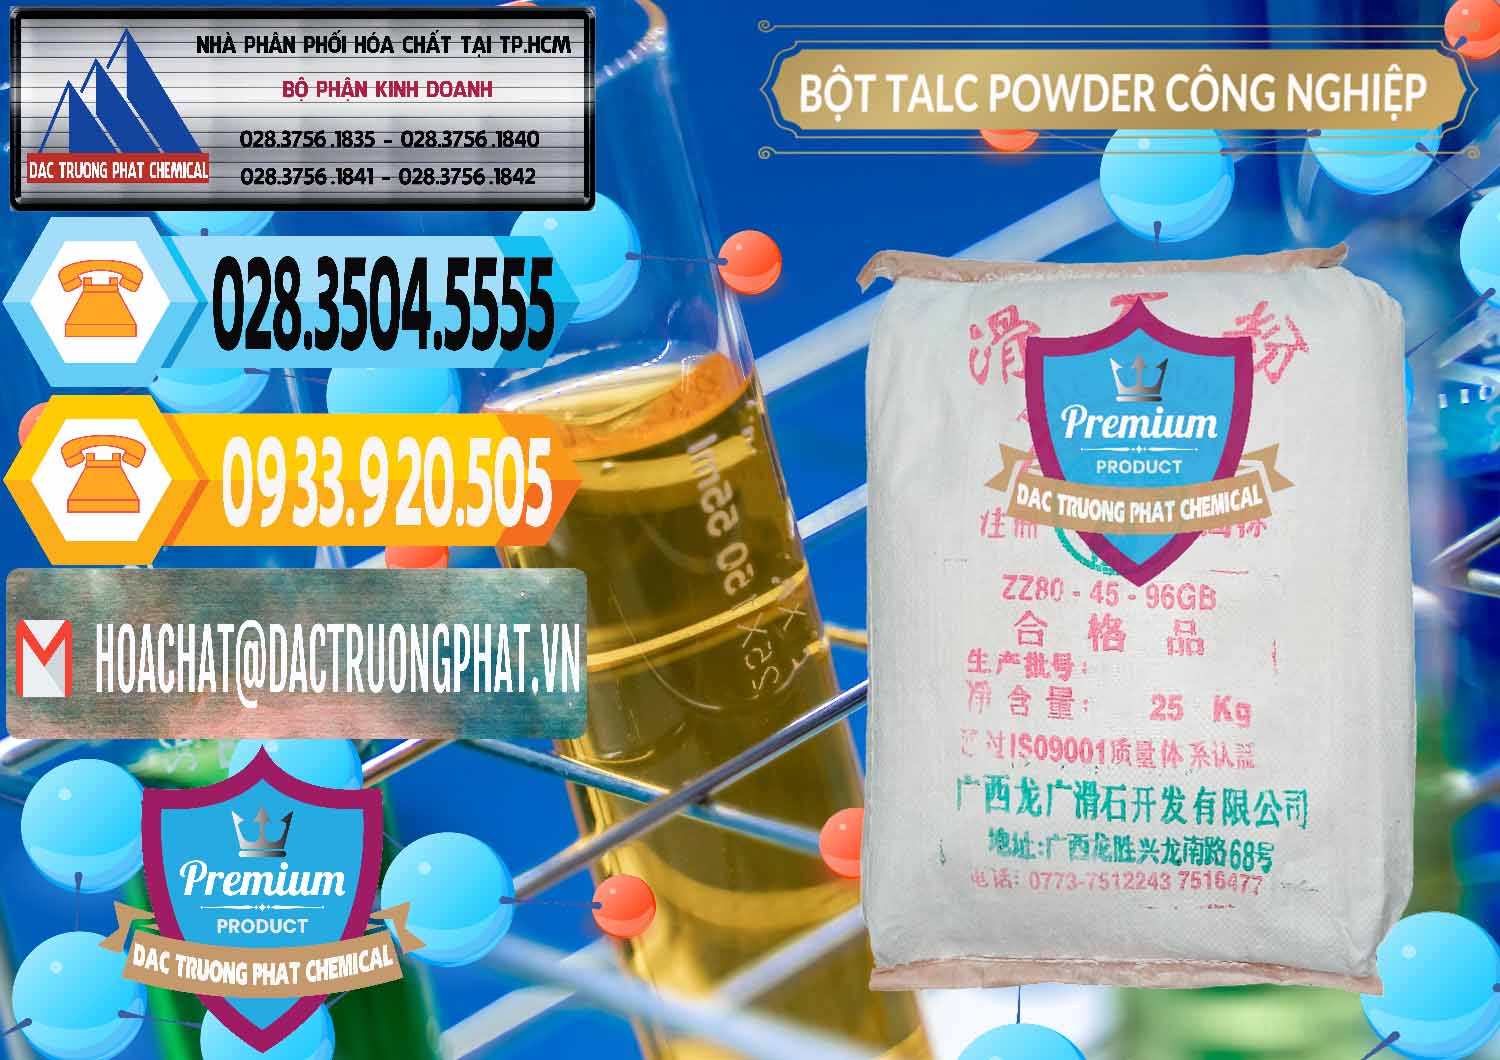 Đơn vị nhập khẩu và bán Bột Talc Powder Công Nghiệp Trung Quốc China - 0037 - Cty chuyên kinh doanh & cung cấp hóa chất tại TP.HCM - hoachattayrua.net